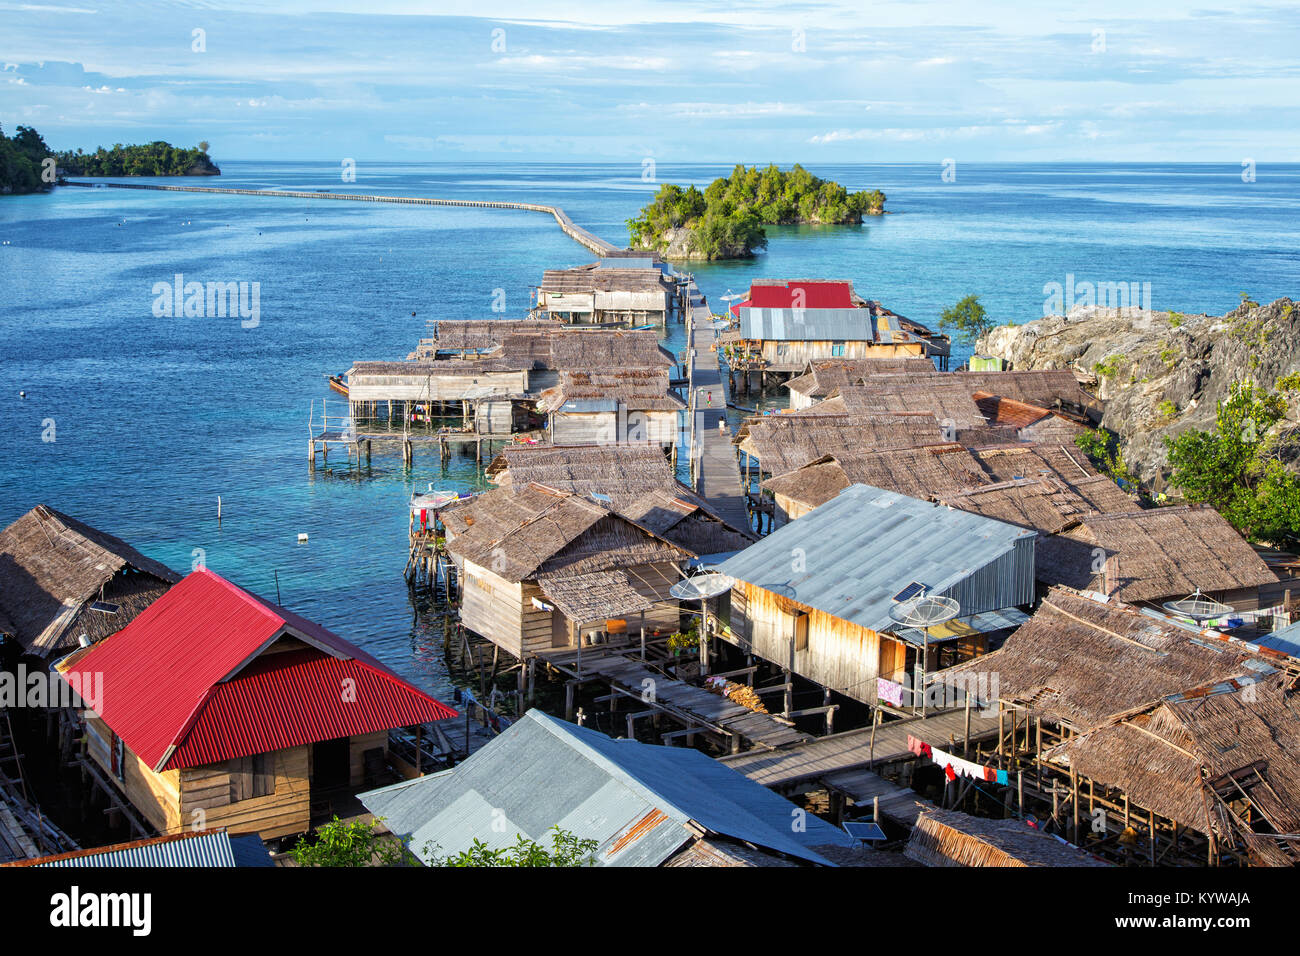 Village sur pilotis Pulau Papan dans le golfe de Tomini à Îles Togian Sulawesi, Indonésie Banque D'Images